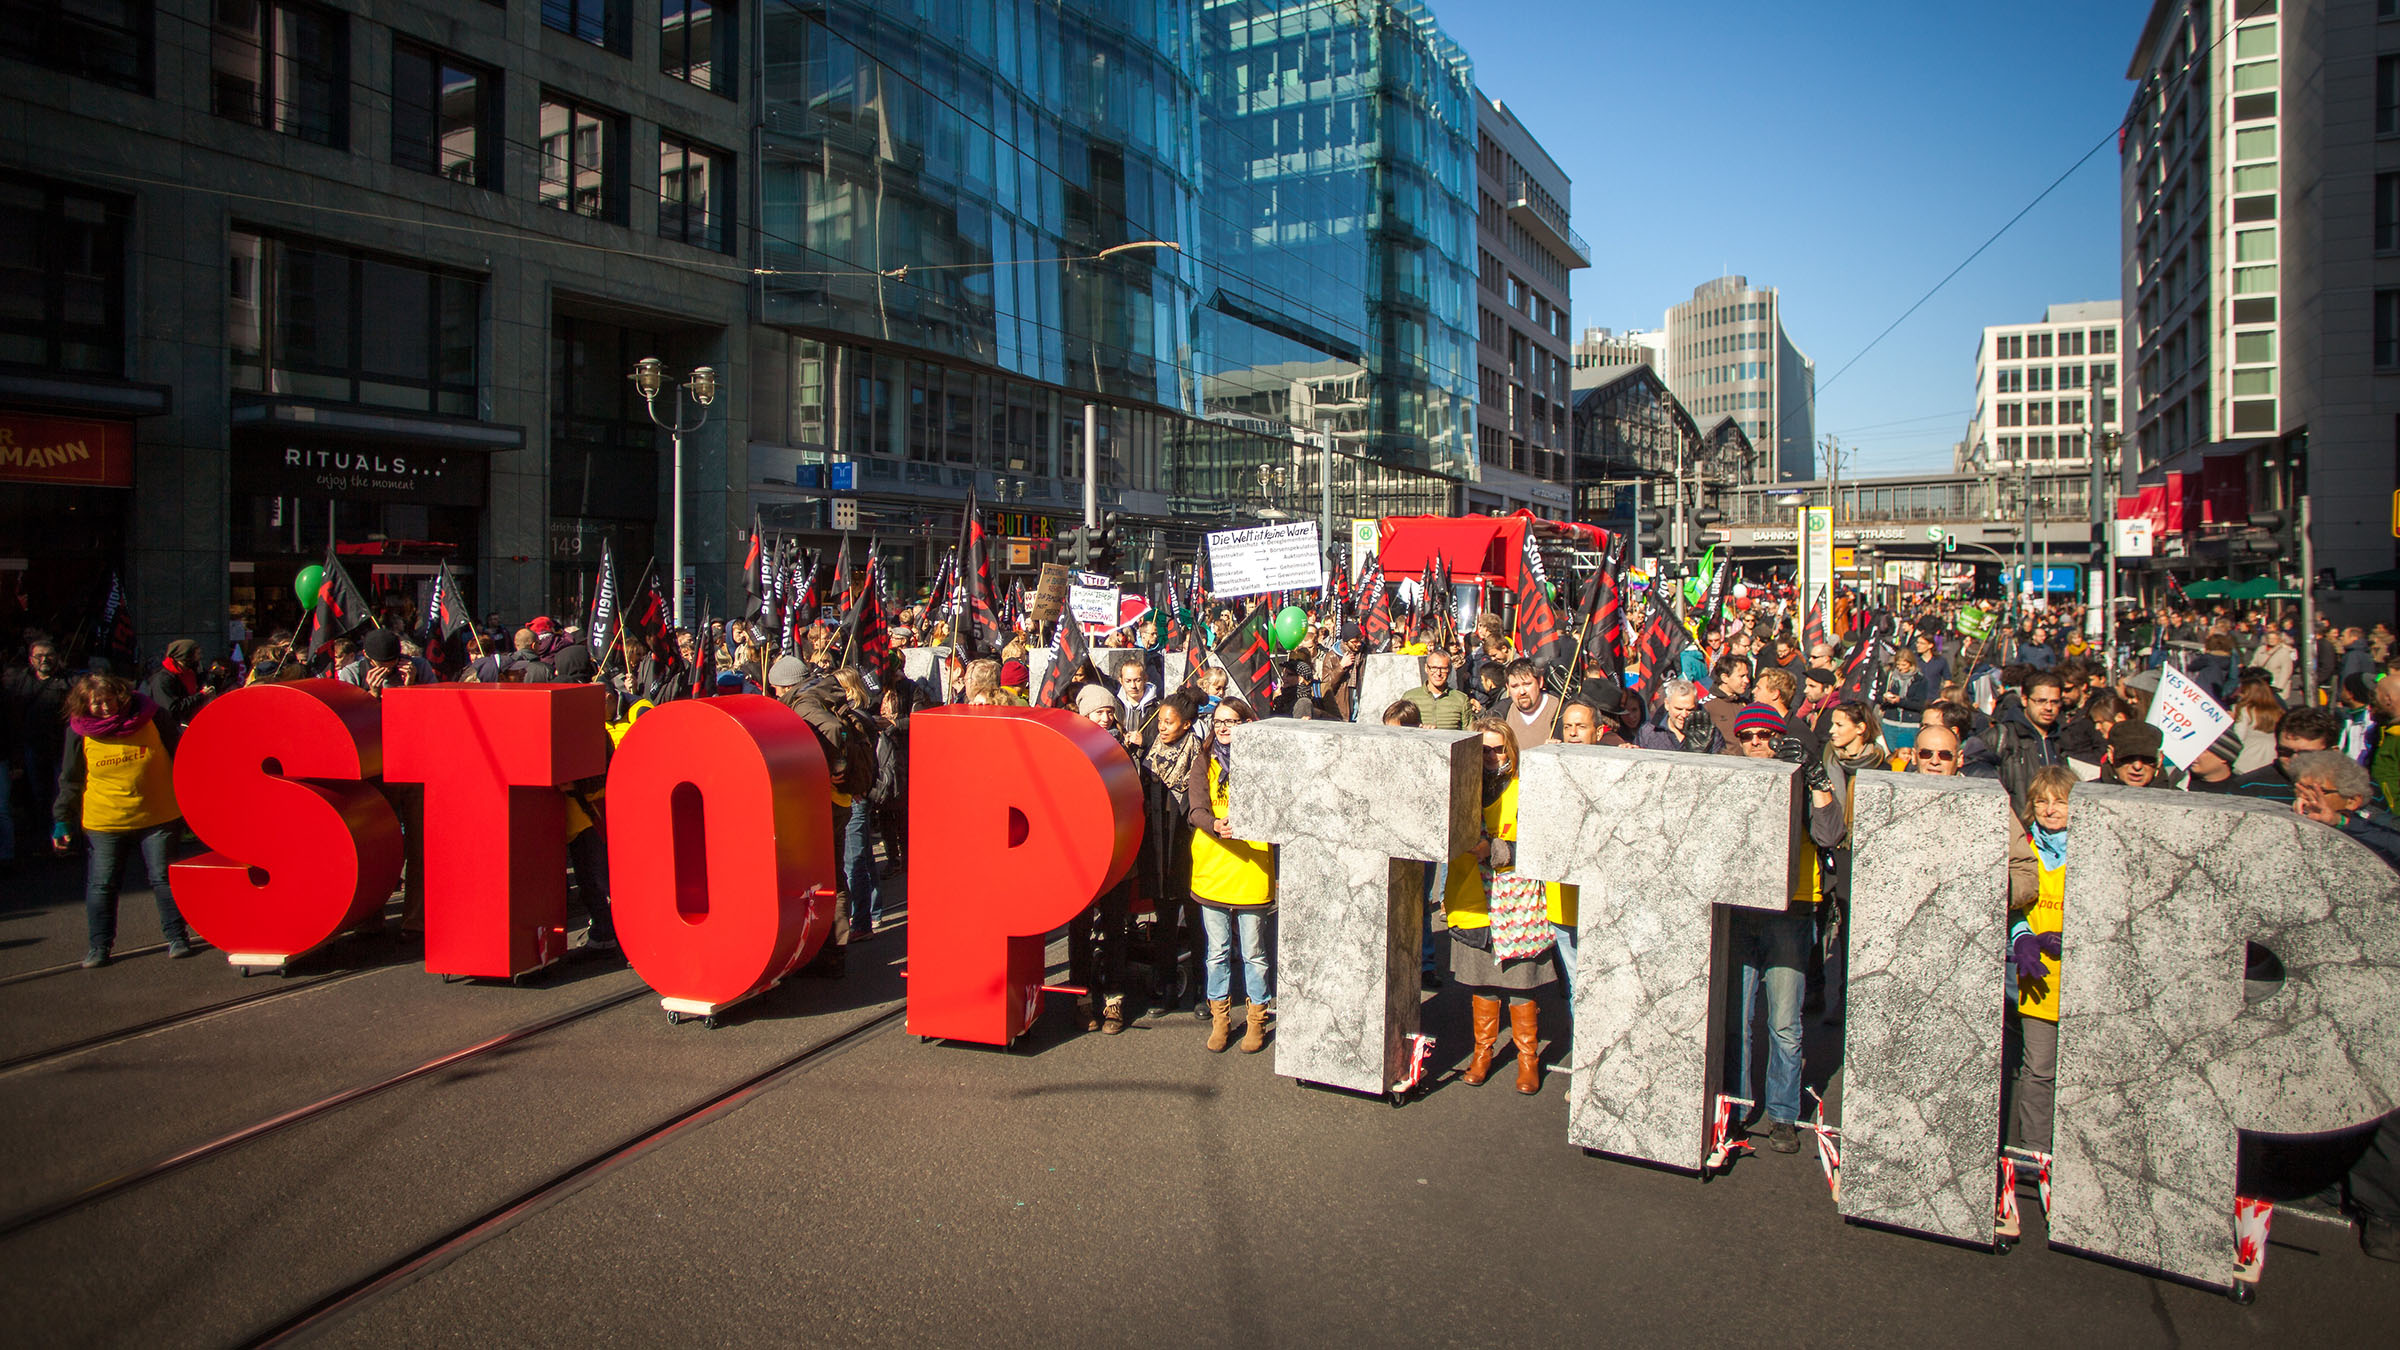 Hunderttausende demonstrieren gegen TTIP: In der Hand halten sie meterhohe Buchstaben, die Wörter "Stop TTIP" ergeben.